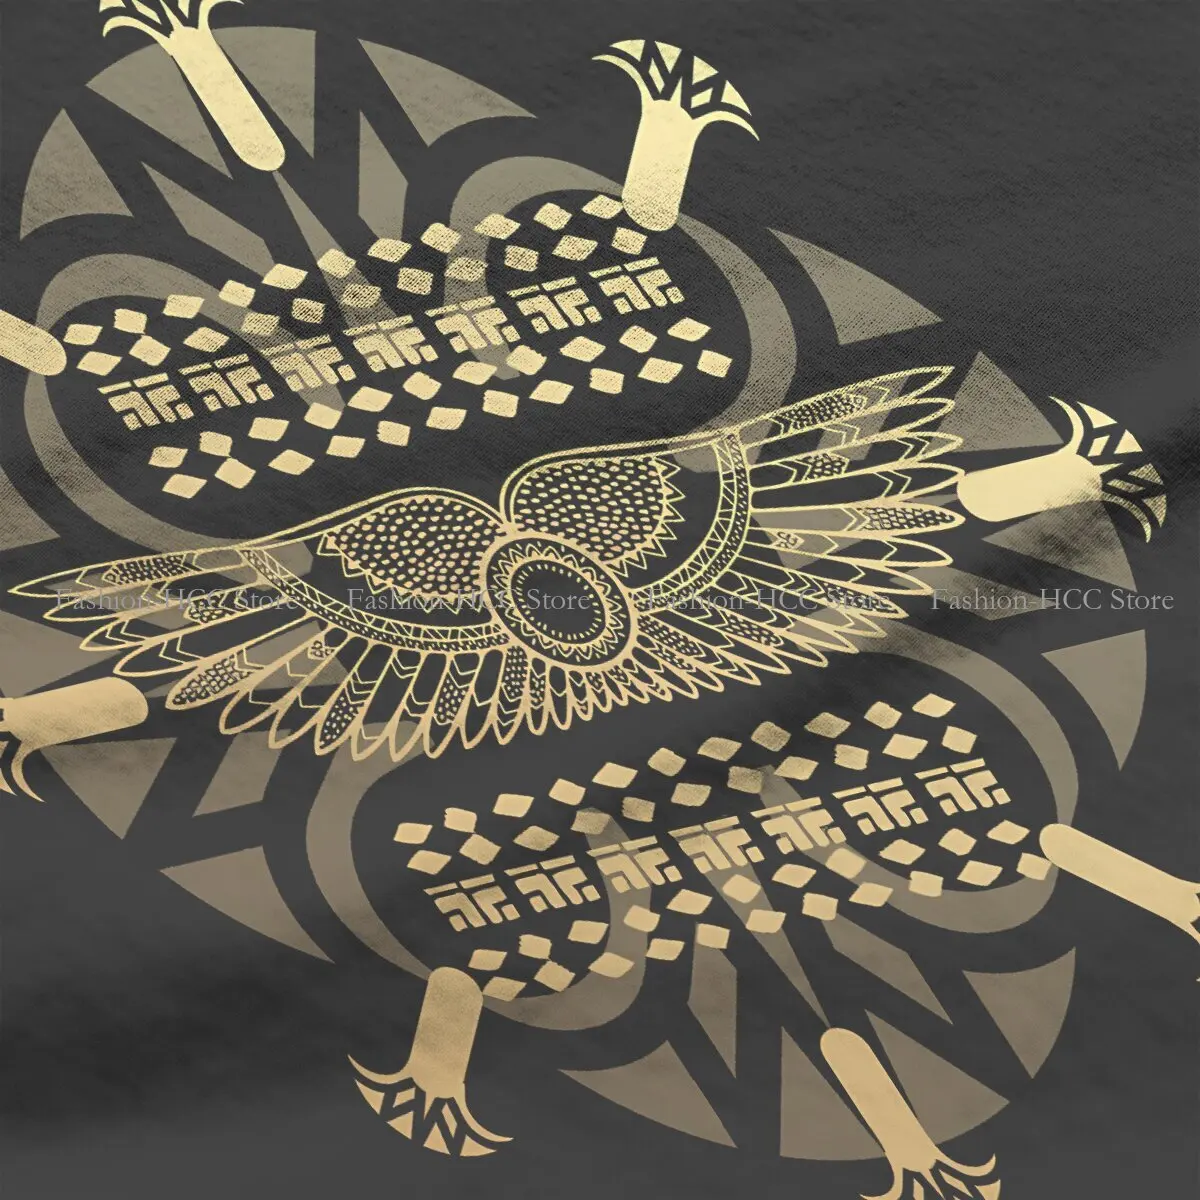 Футболка из полиэстера в стиле Black Symbols, культура Древнего Египта, высокое качество, Новый дизайн, подарочная одежда, футболка с коротким рукавом 2